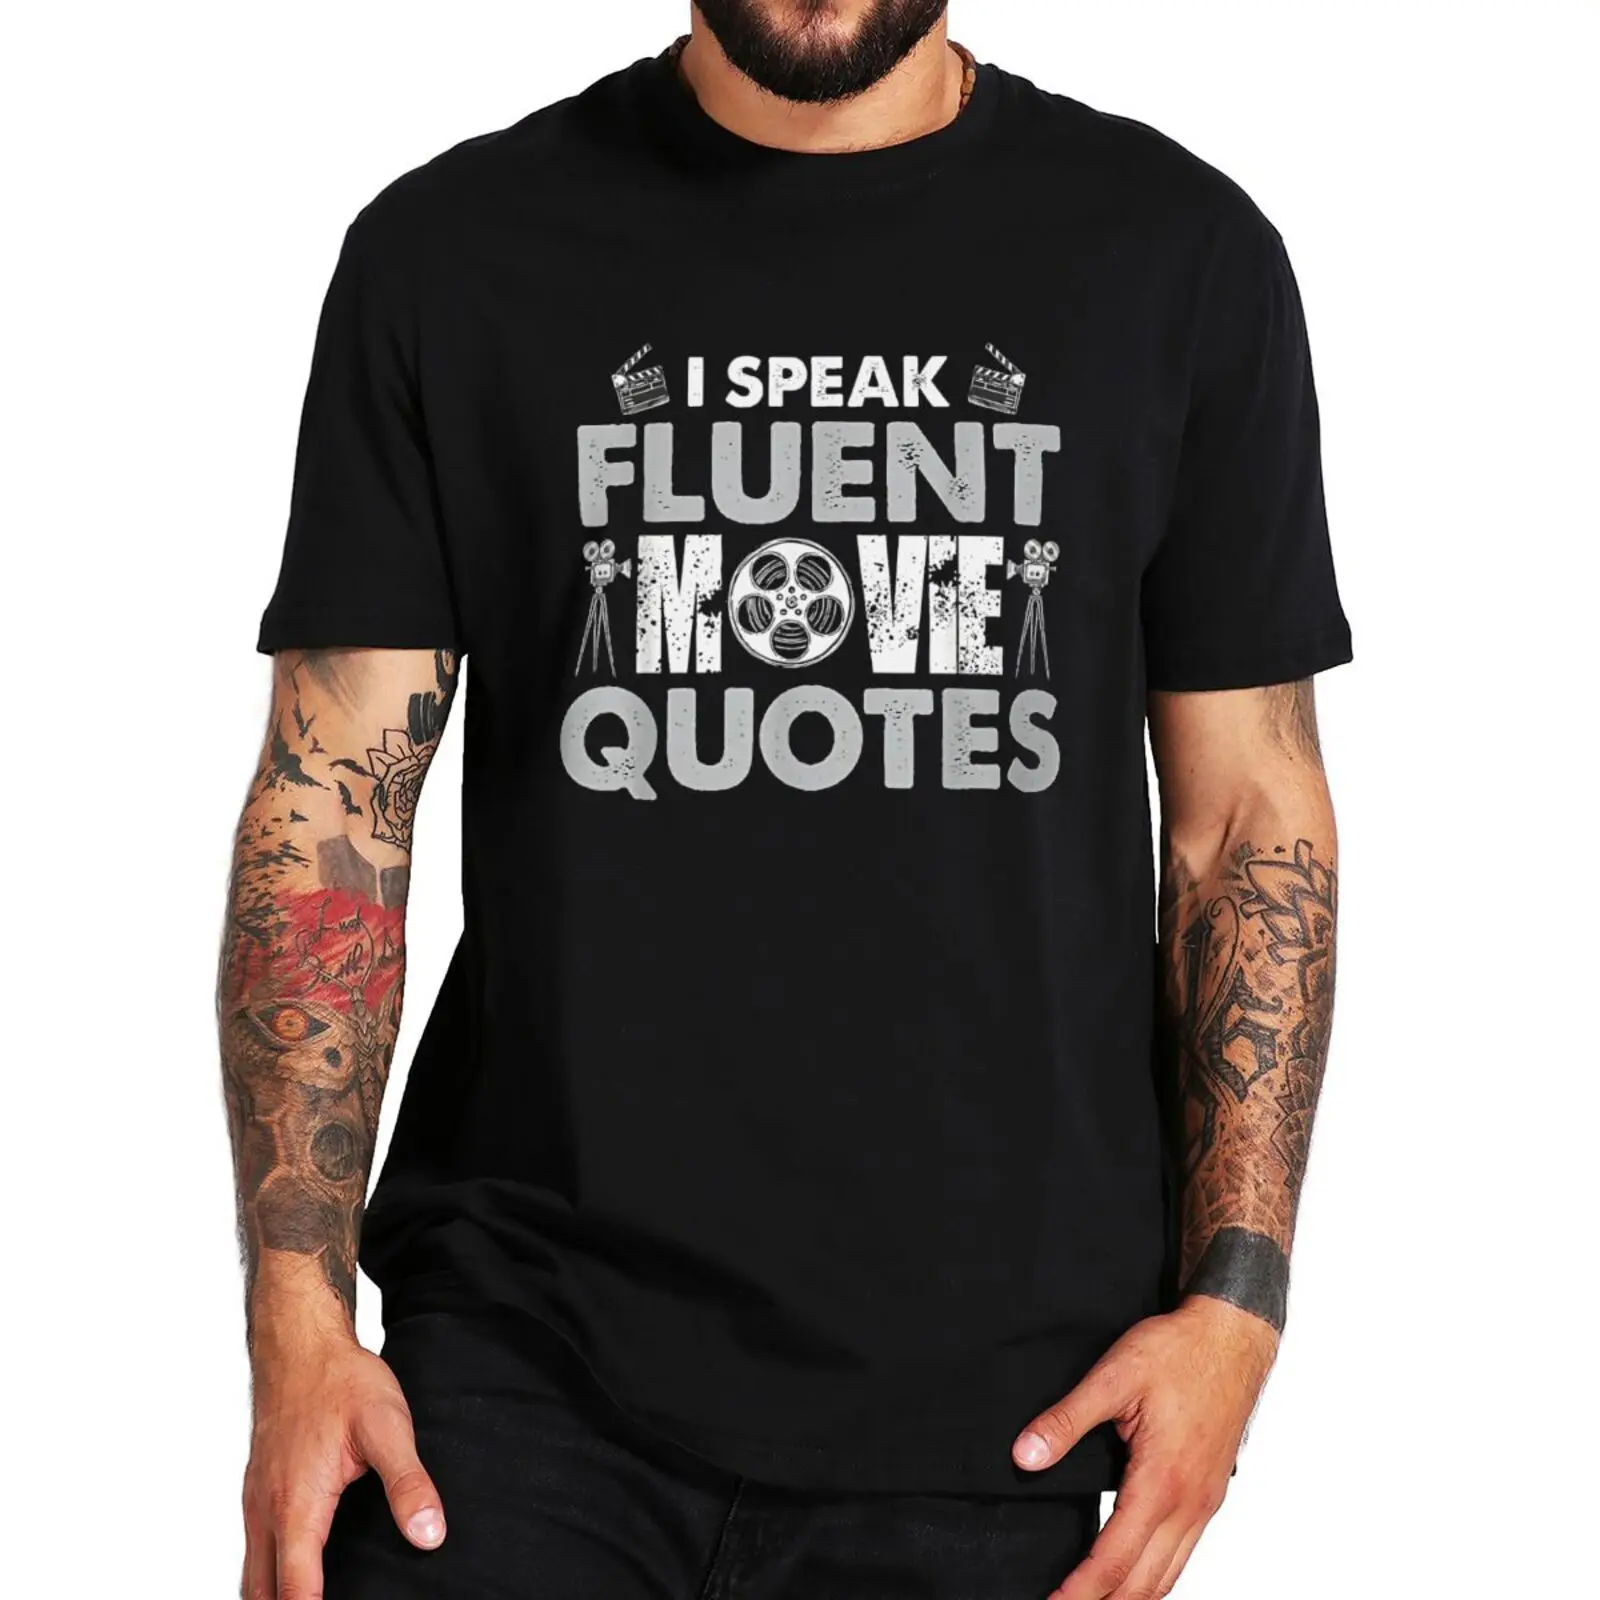 

I Speak Fluent Movie Quotes T-Shirt Vintage Funny Film Fans Graphic Men Clothing EU Size 100% Cotton Summer T Shirt